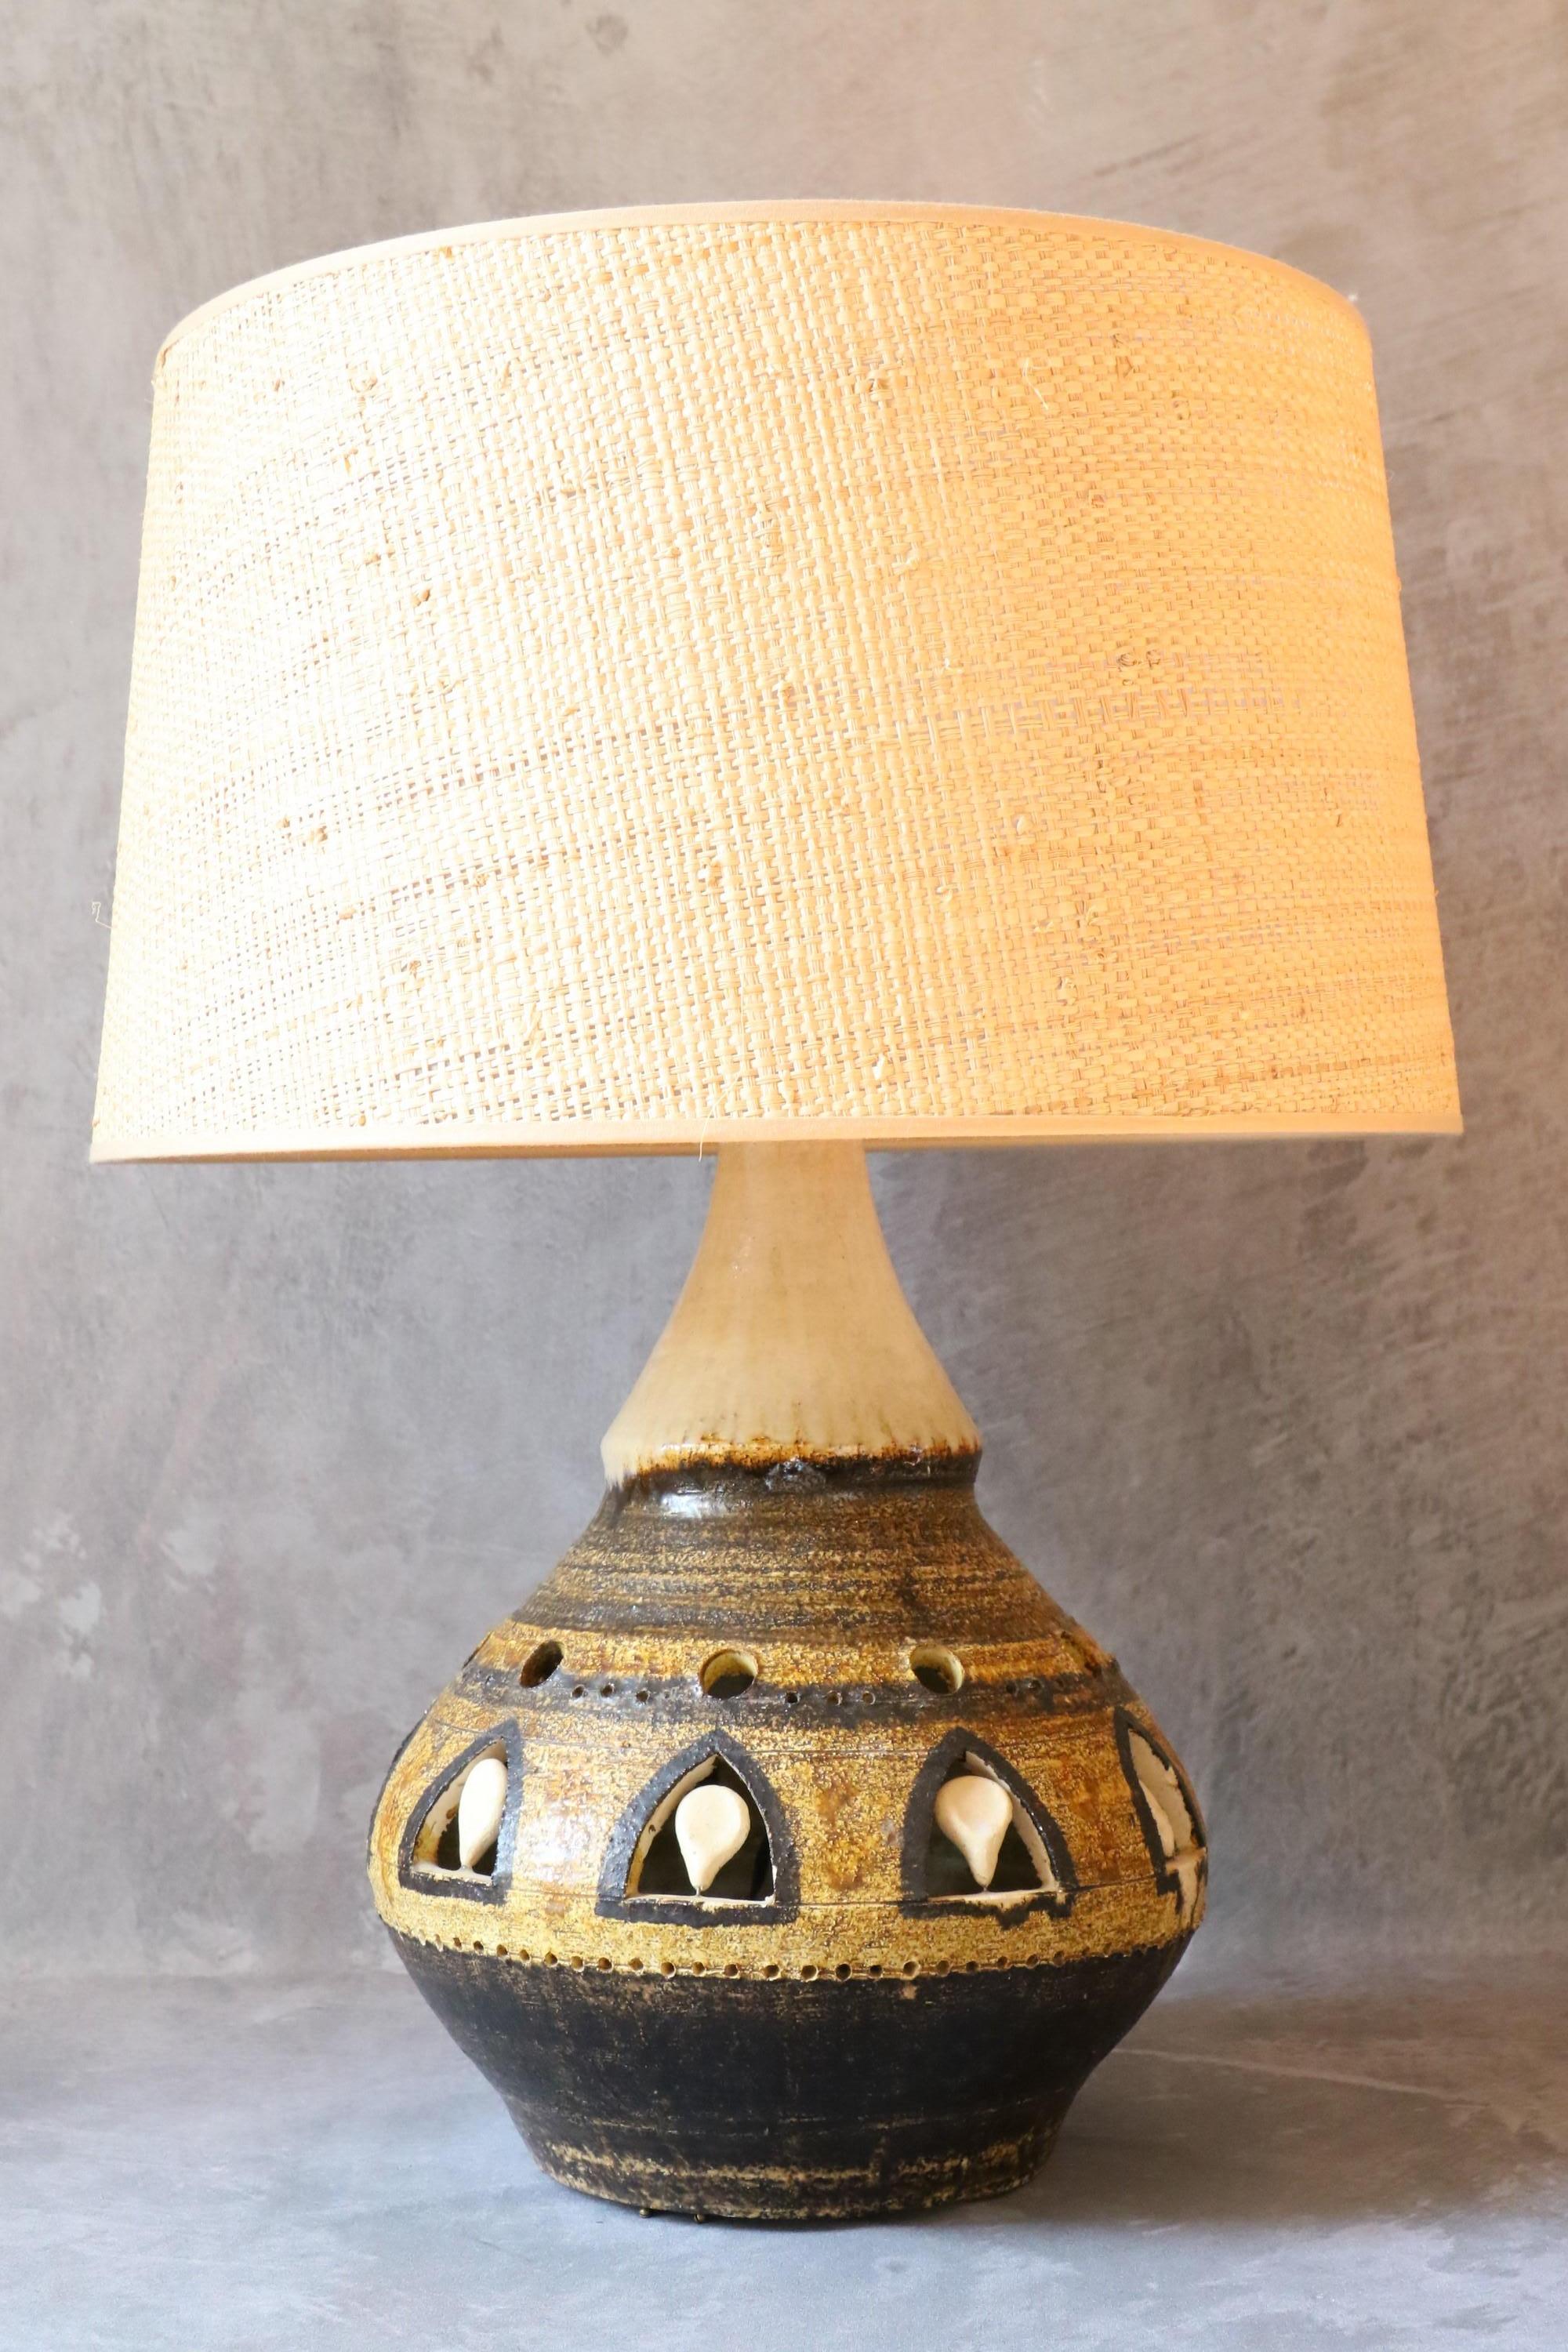 Massive double Lighting Lampe en céramique de Georges Pelletier, années 1970, France

C'est une belle lampe en céramique. Elle offre un double éclairage puisqu'une deuxième ampoule se trouve à l'intérieur de la base de la lampe. La lumière est très